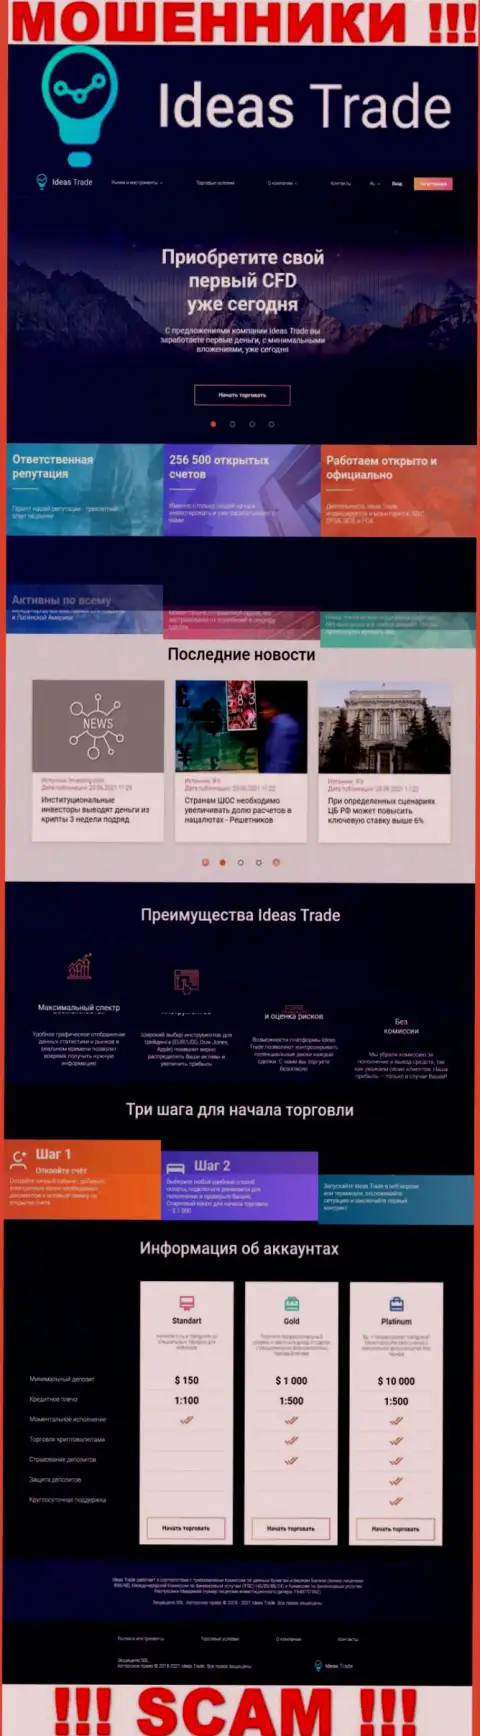 Официальный веб-сайт мошенников Идеас Трейд